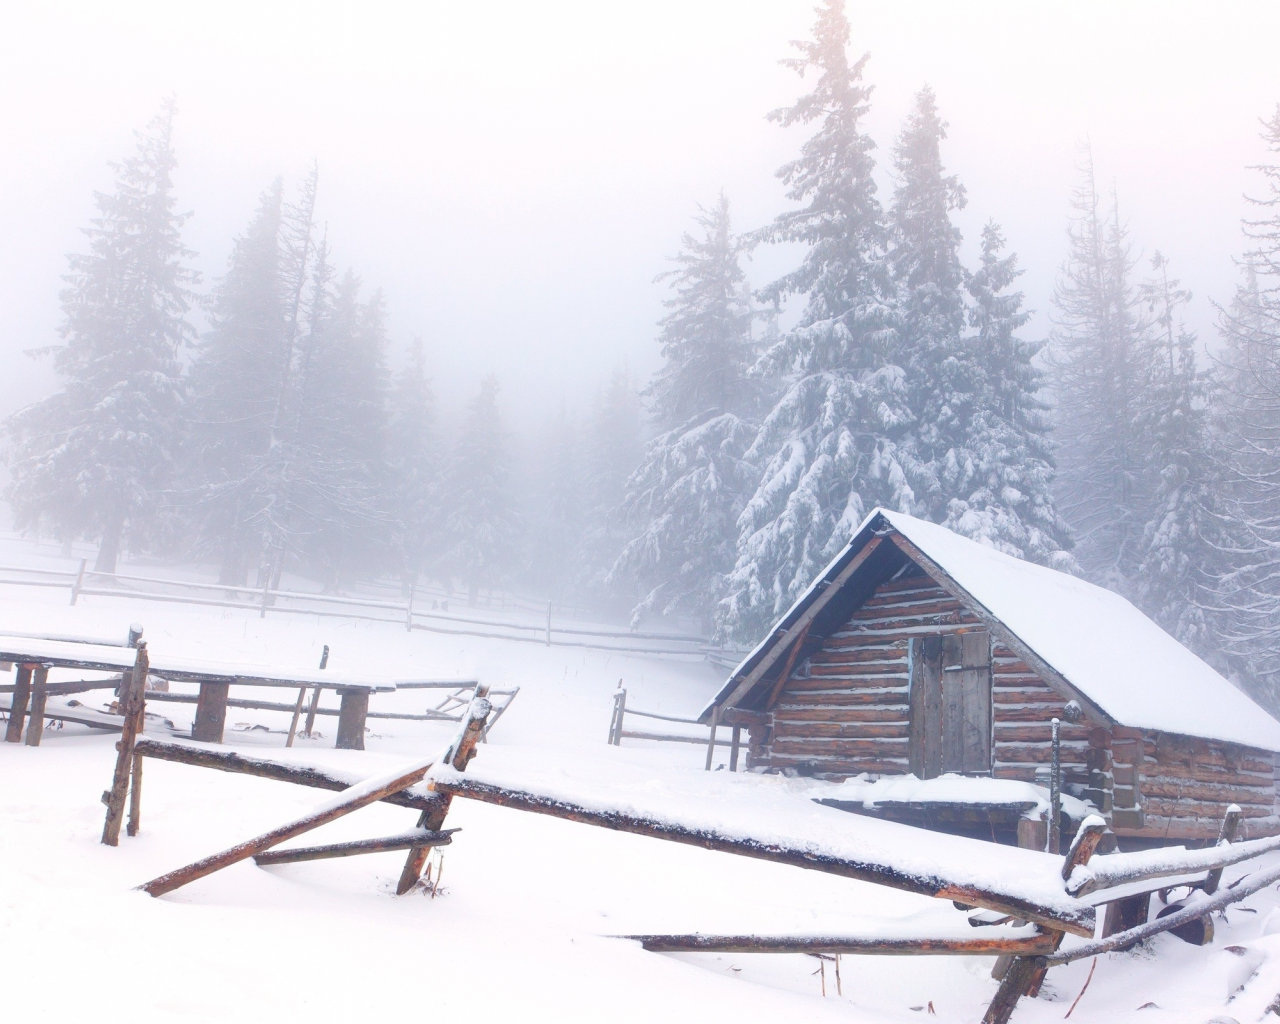 снег пейзажи, салон, снег, snow landscapes, pine trees, cabin, snow, сосновые деревья